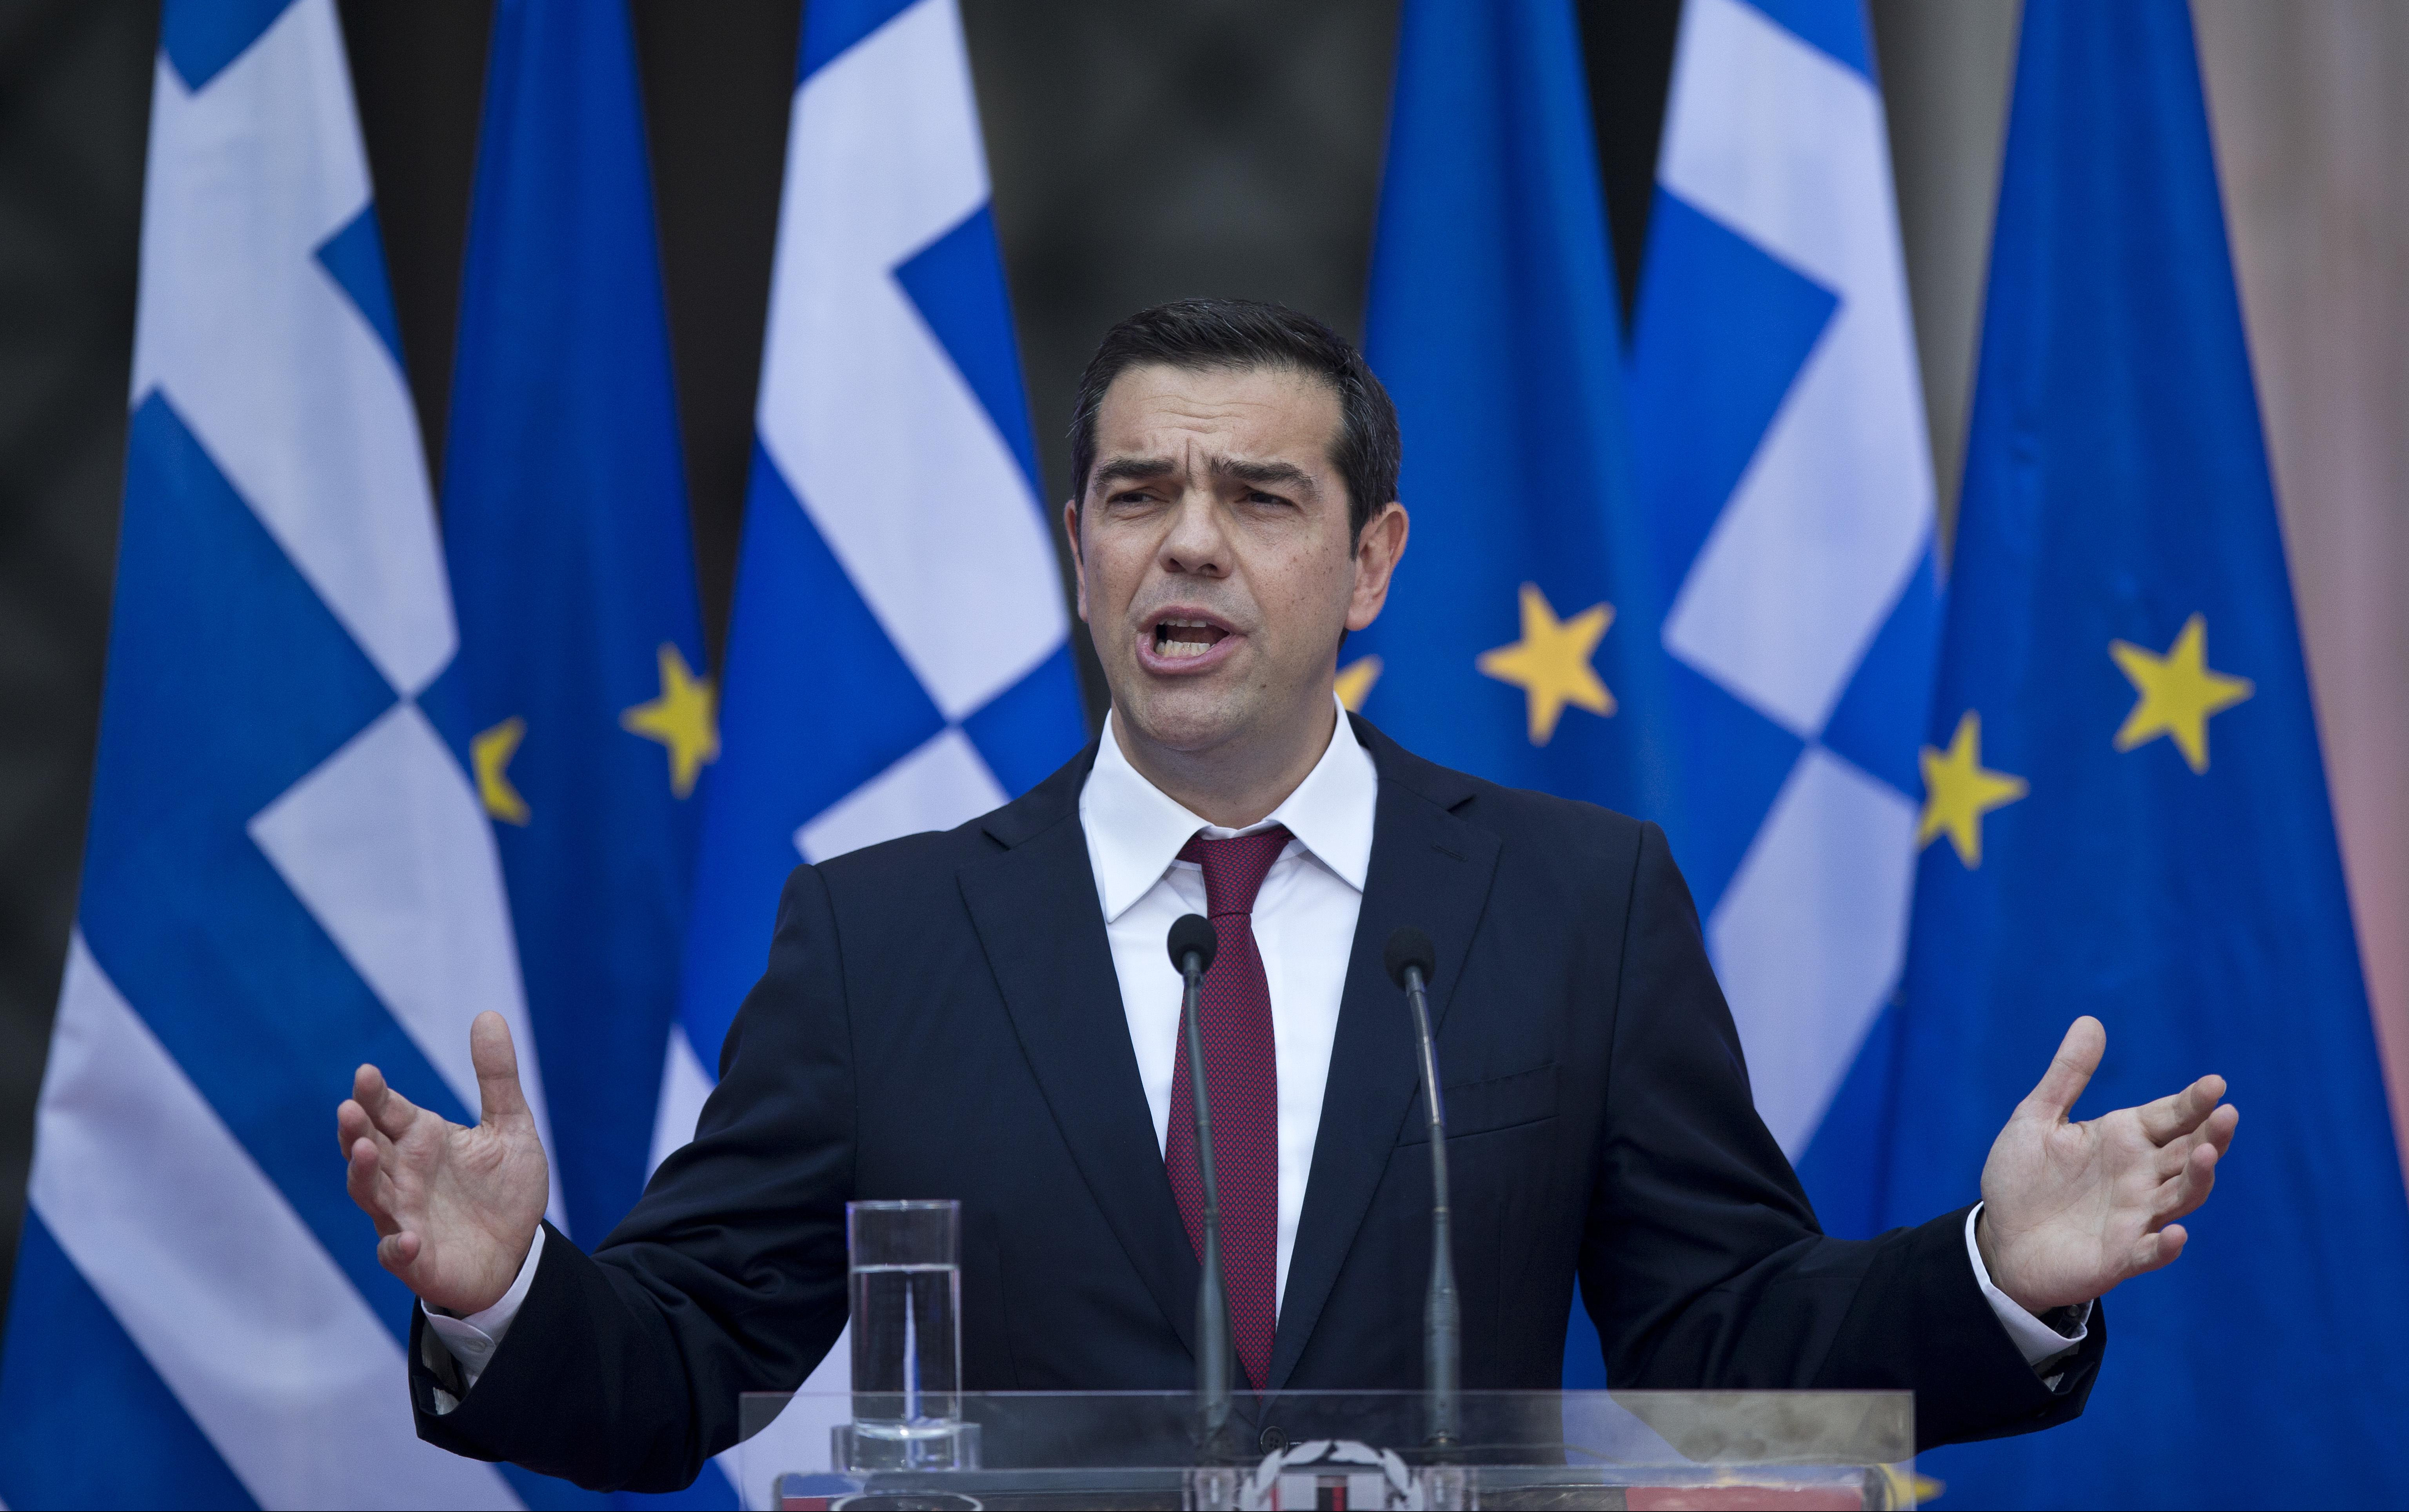 PADA GRČKA VLADA?! Cipras traži glasanje o poverenju vladi posle ostavke ministra!